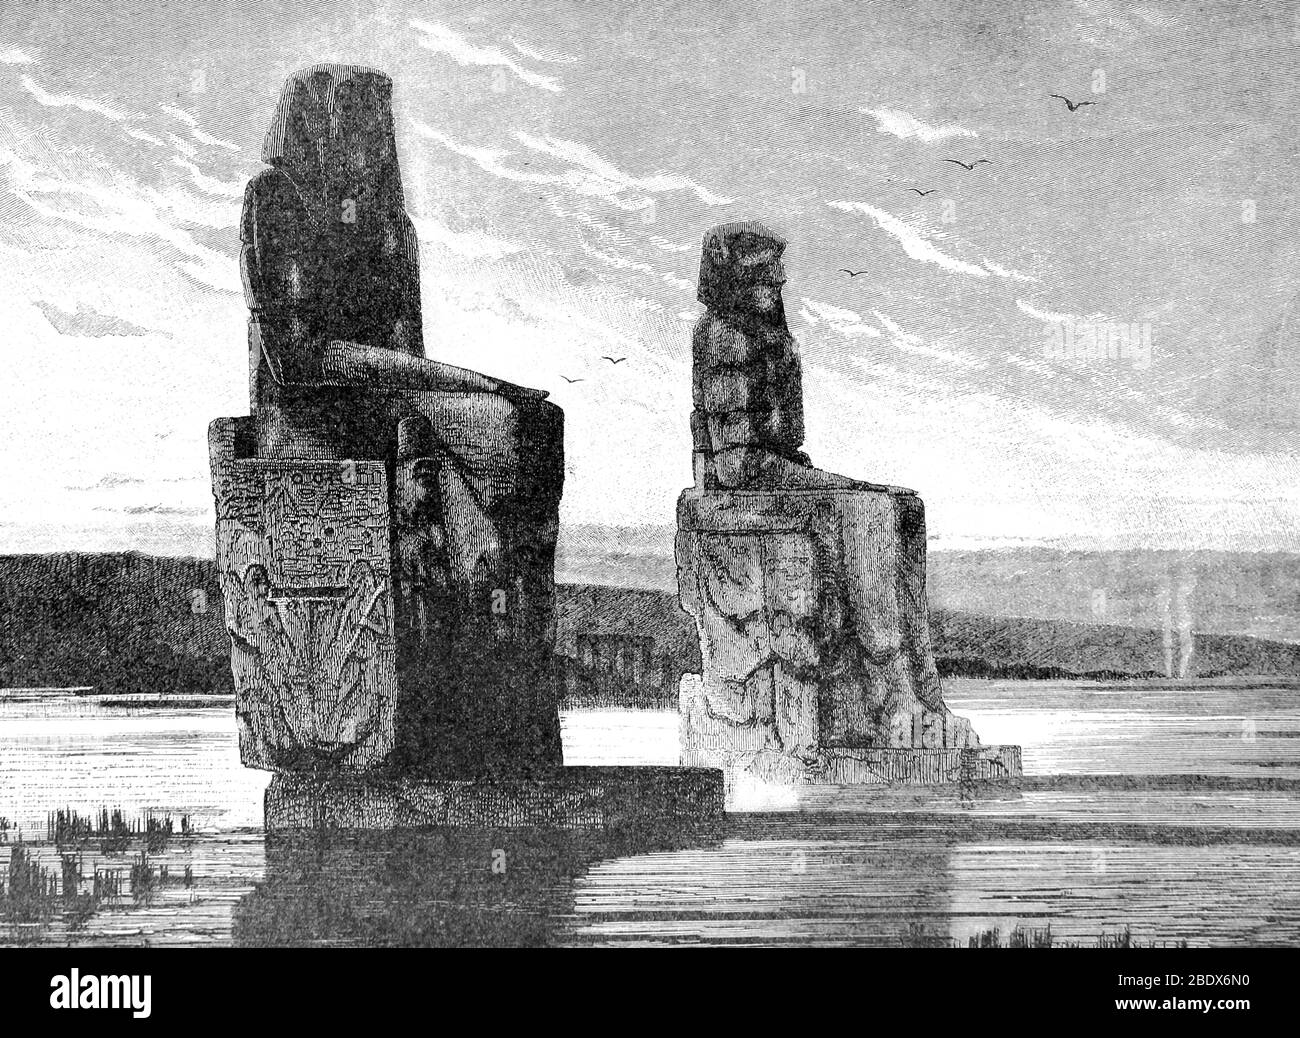 Colossi de Memnon, Valle de los Reyes, siglo XIX Foto de stock